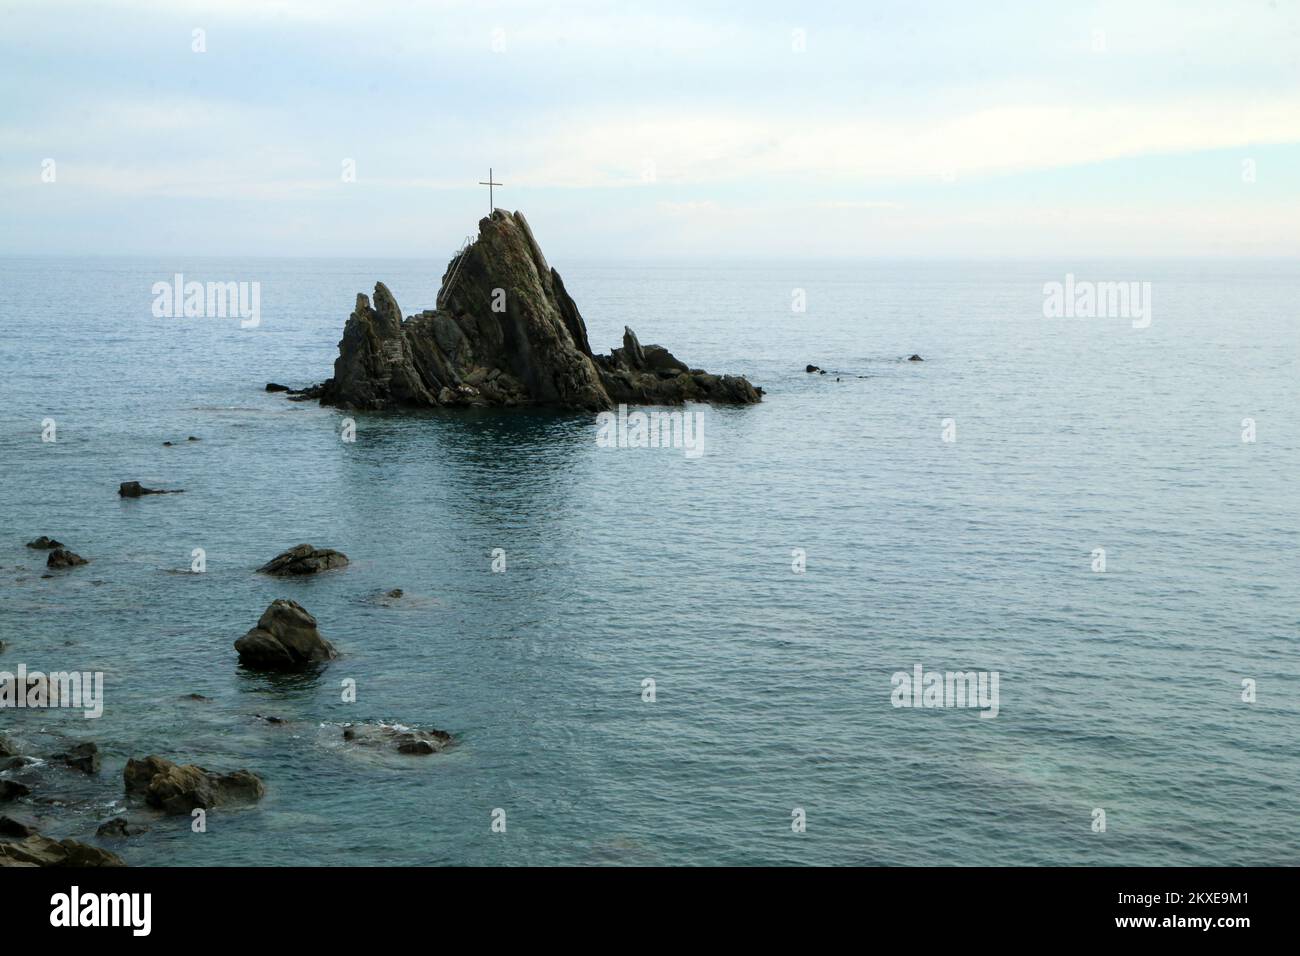 L'isola solitaria rocciosa con una semplice croce in cima alla costa in Italia nei pressi di Sestri Levante nel tardo pomeriggio estivo. Foto Stock